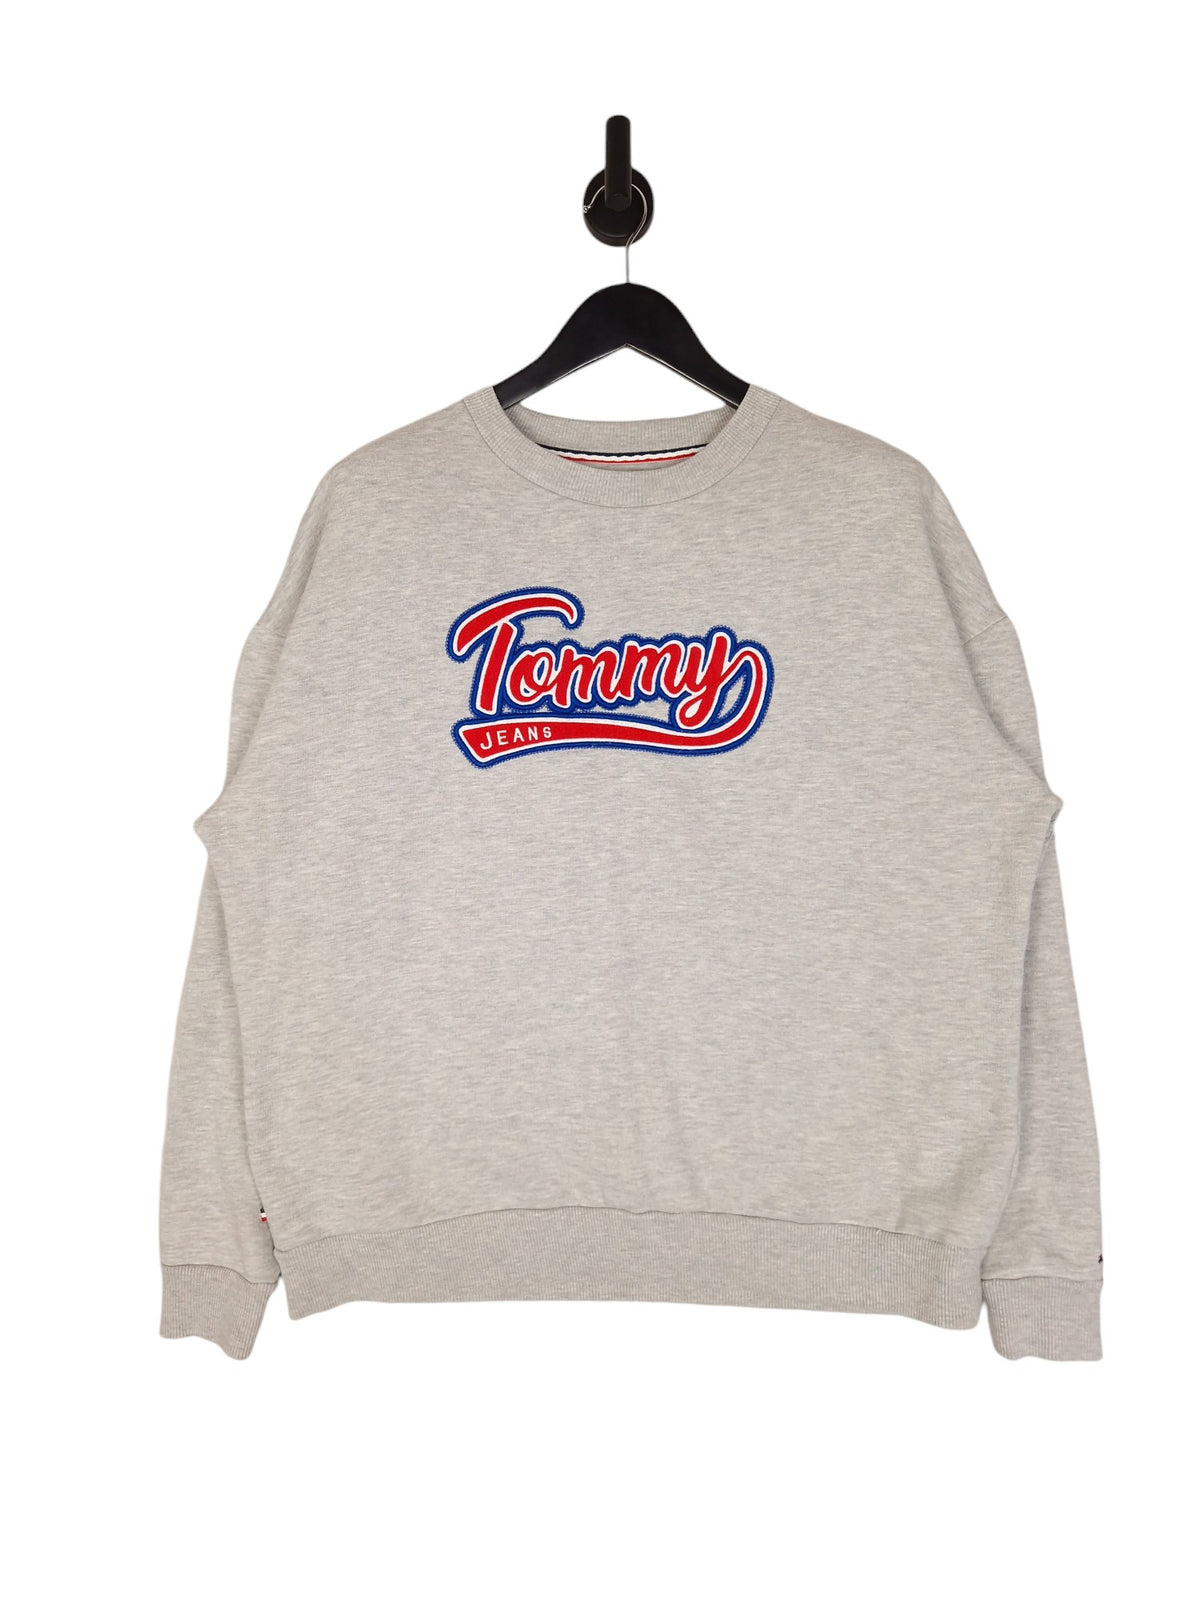 Tommy Jeans Sweatshirt- Size XL